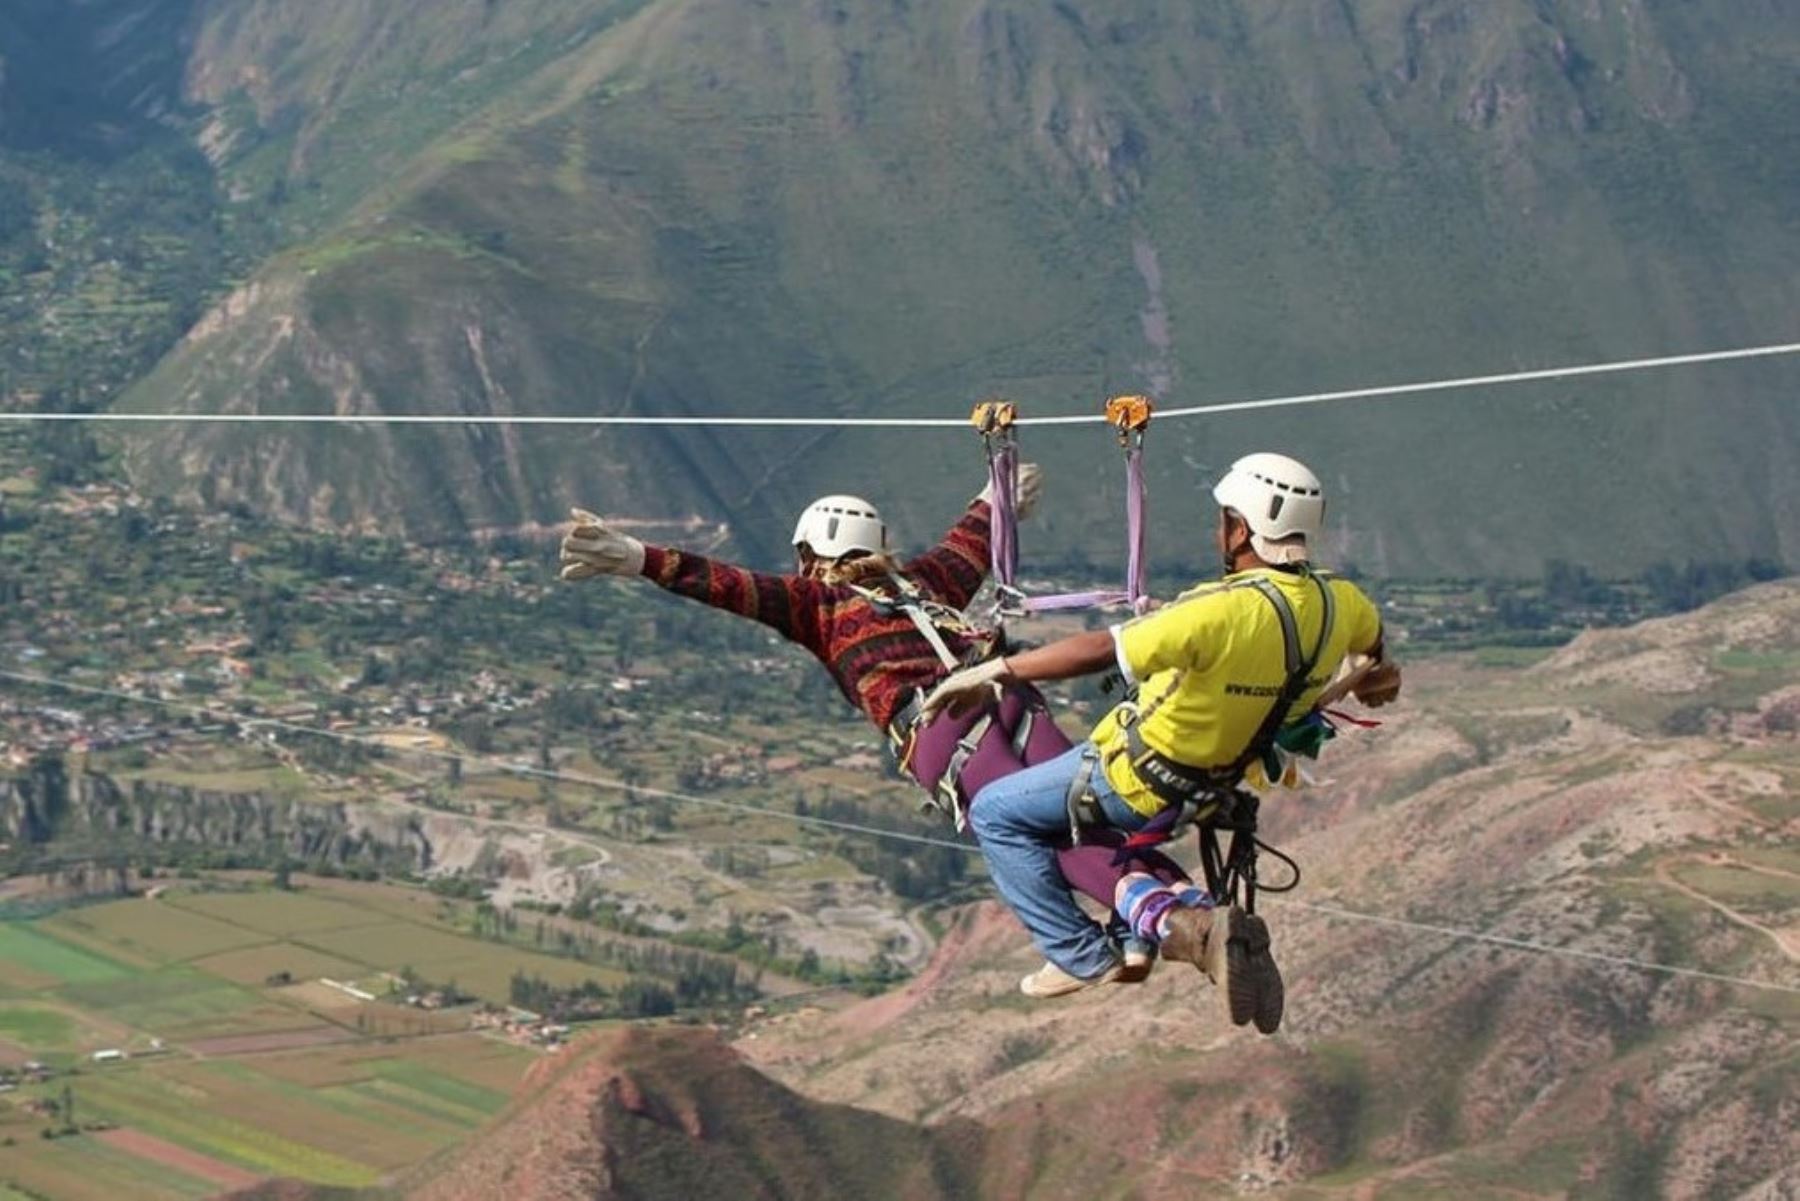 El Ministerio de Comercio Exterior y Turismo (Mincetur) lamentó el deceso de una turista limeña y un guía de turismo  en el distrito de Maras, en la región Cusco, cuando practicaban deporte de aventura, e indicó que se vienen llevando a cabo las investigaciones por parte de las autoridades pertinentes. ANDINA